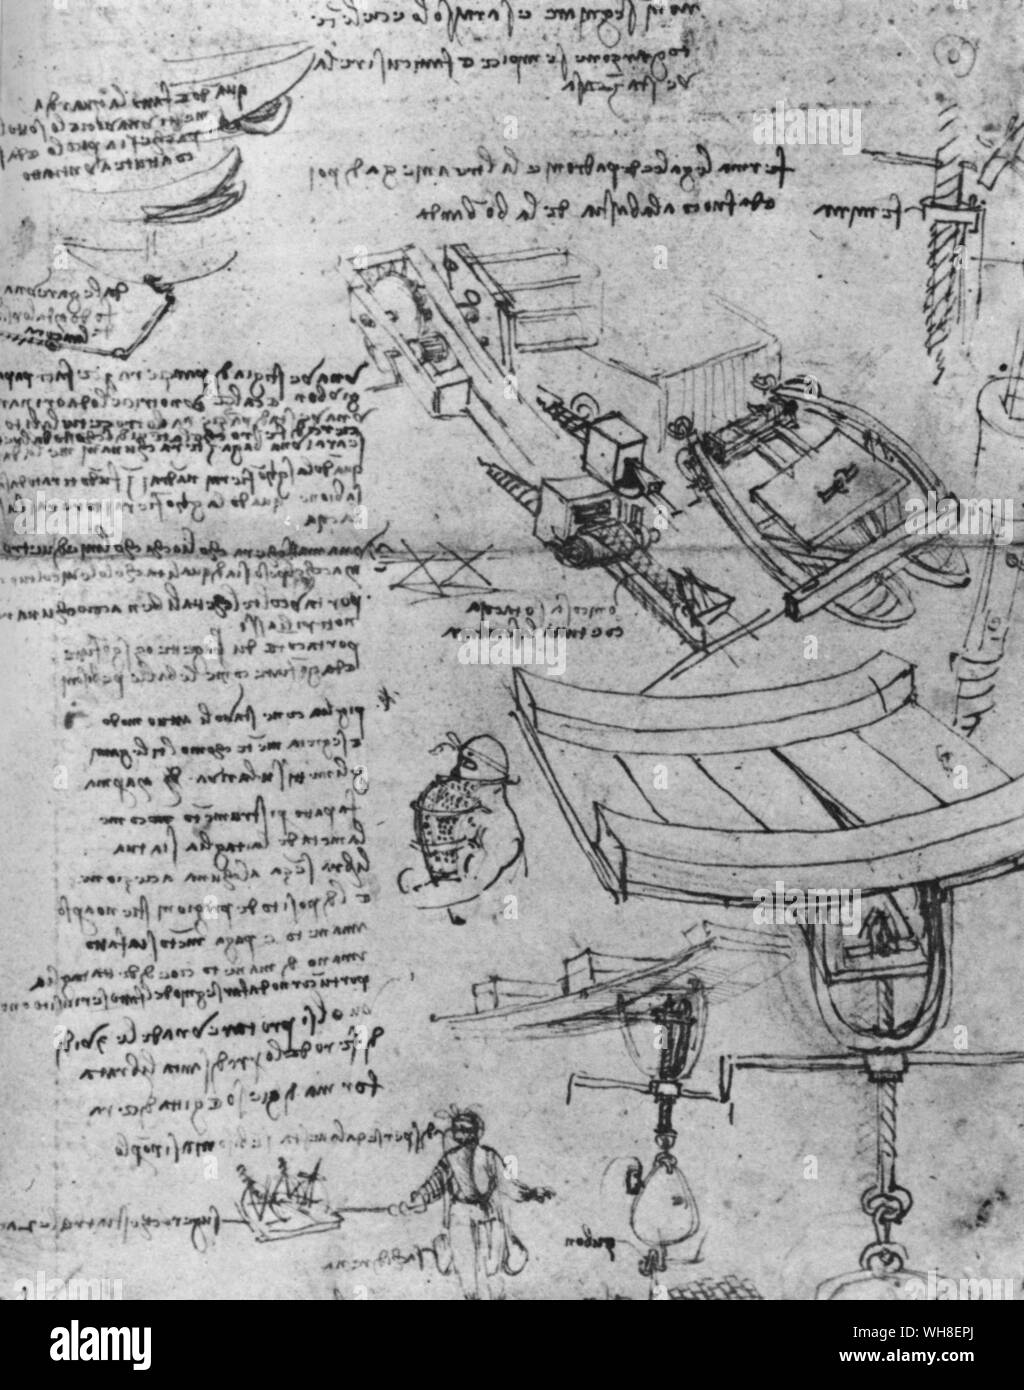 Nicht vermitteln Sie Ihr Wissen und werden Sie Excel allein'. Alle Informationen auf dieser Seite von Leonardo's Notebook-dating von 1500, als er in Venedig war, schlägt vor, eine Nacht- und Nebelaktion von Leonardo für das Sinken von feindlichen Schiffen entwickelt. Unten links ist seine detaillierte Beschreibung der Tauchanzug. rechts unten, seine Borer für durchlöcherte die Schiffe unter der Wasseroberfläche. Sogar seine Special Agent wird mit Namen genannt. Leonardo da Vinci (1452-1519) war ein italienischer Renaissance Architekt, Musiker, Anatom, Erfinder, Ingenieur, Bildhauer, Geometer und Maler. . . Stockfoto